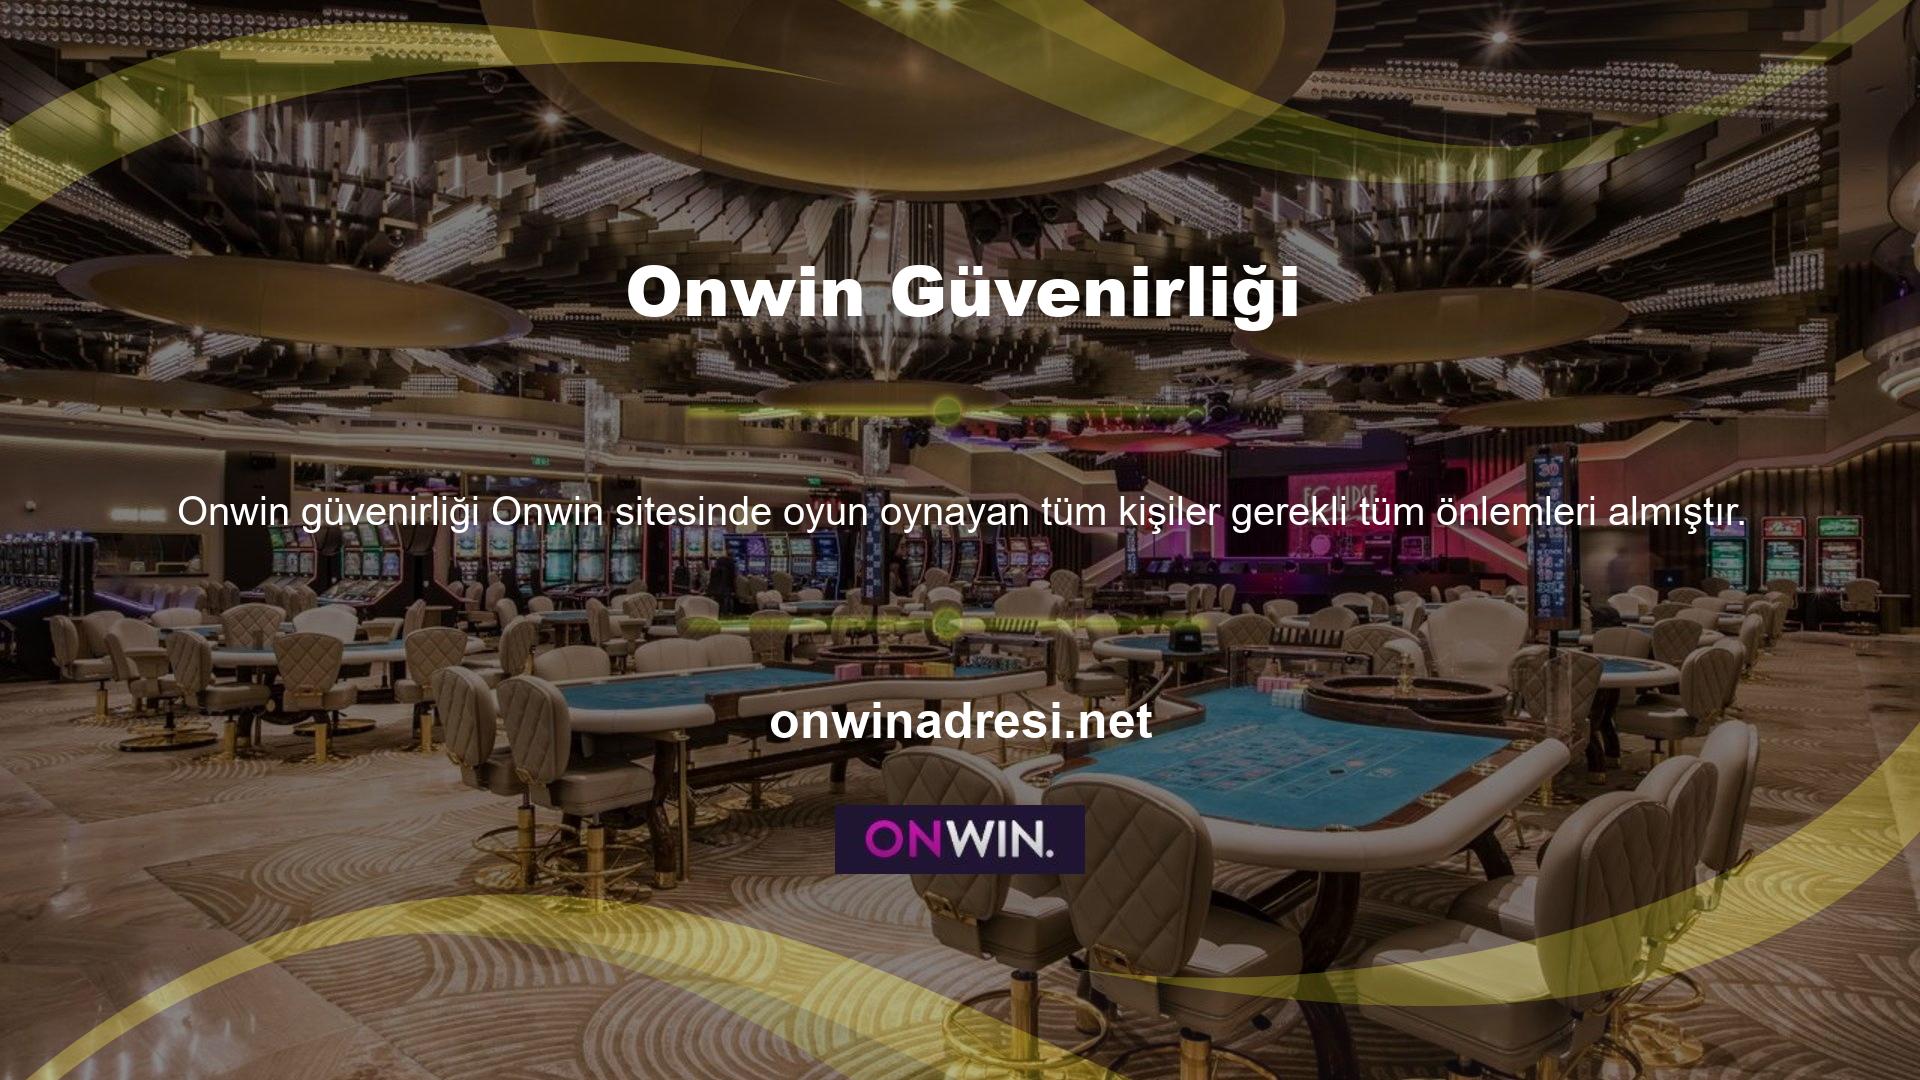 Onwin web sitesi, üyelerine zarar verebilecek her türlü faaliyet veya işlemi yasaklamaktadır